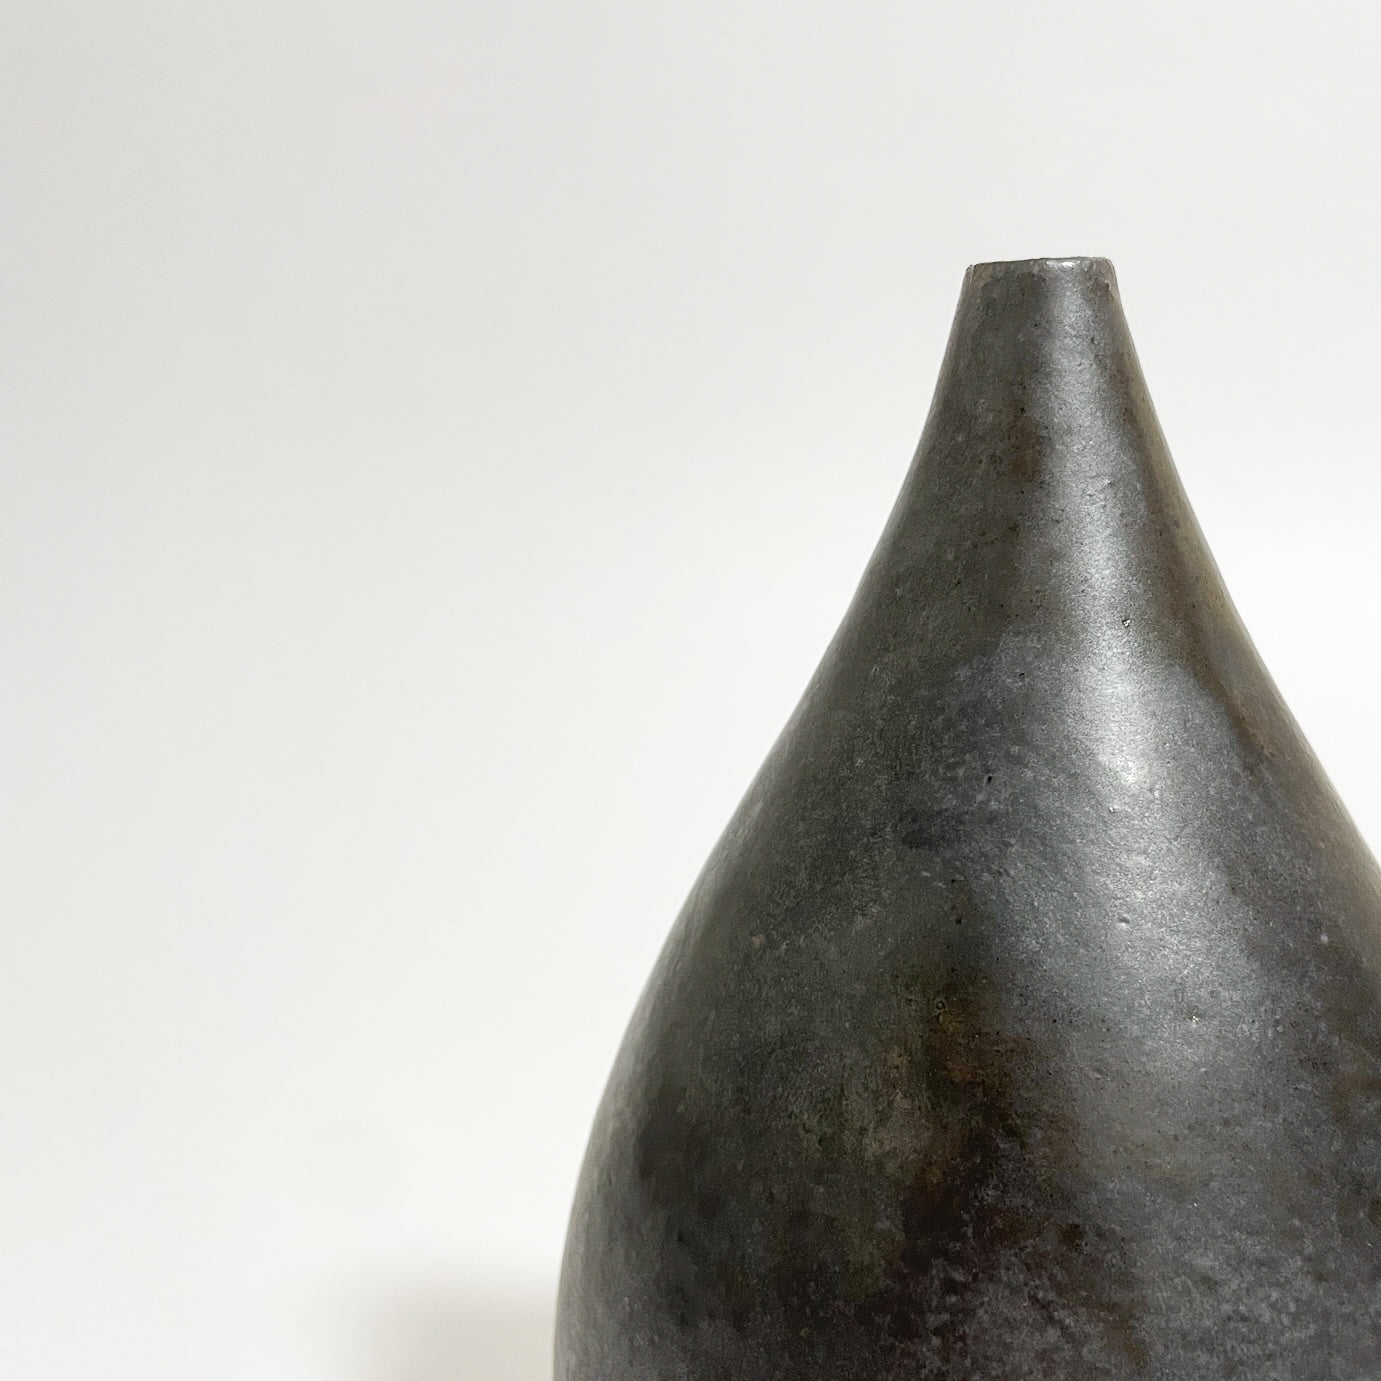 Agano Ware Flower Vase